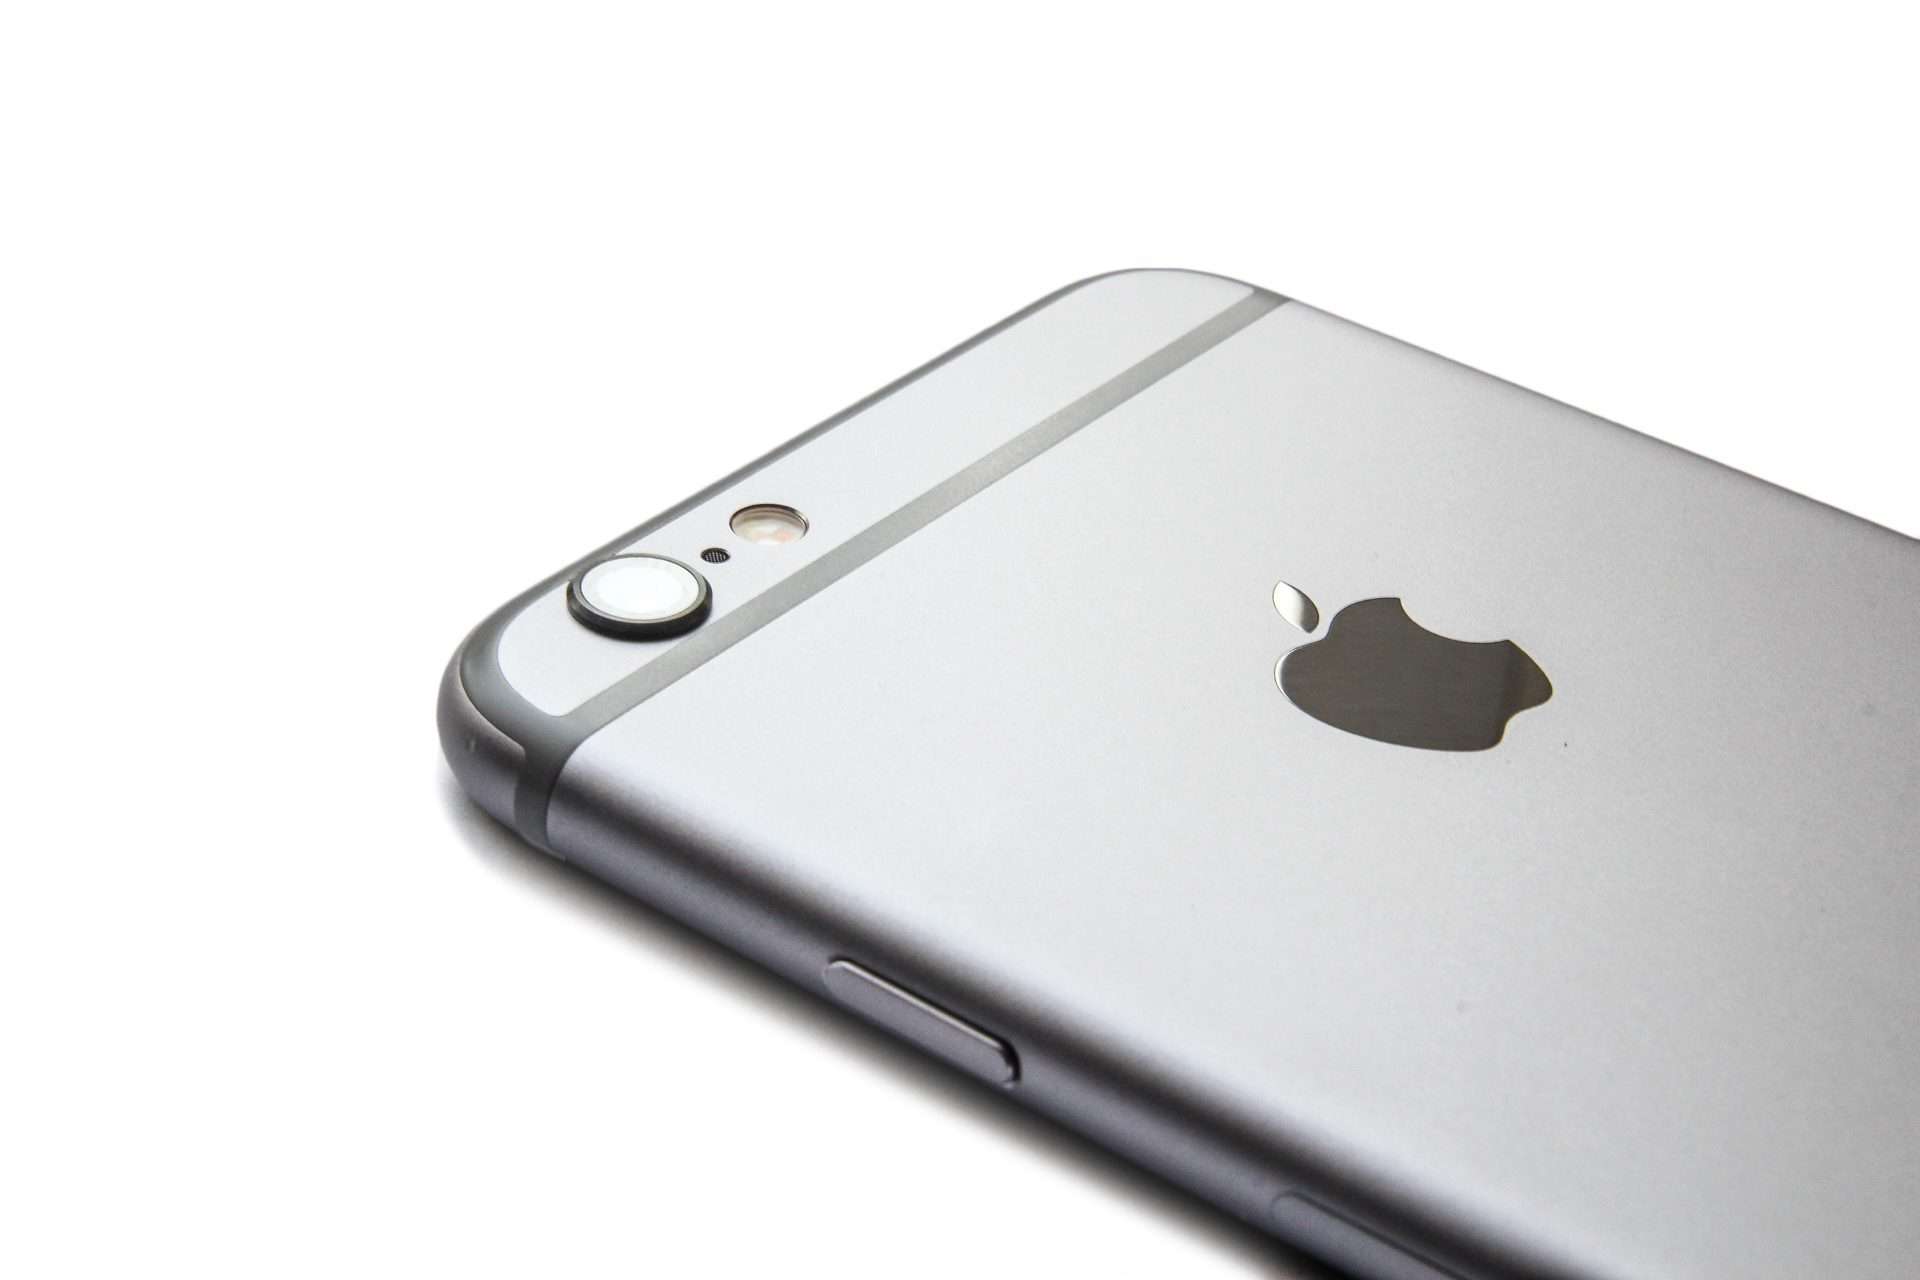 vocaal sessie vochtigheid iPhone 6 kopen met abonnement, prijzen en aanbiedingen vergelijken